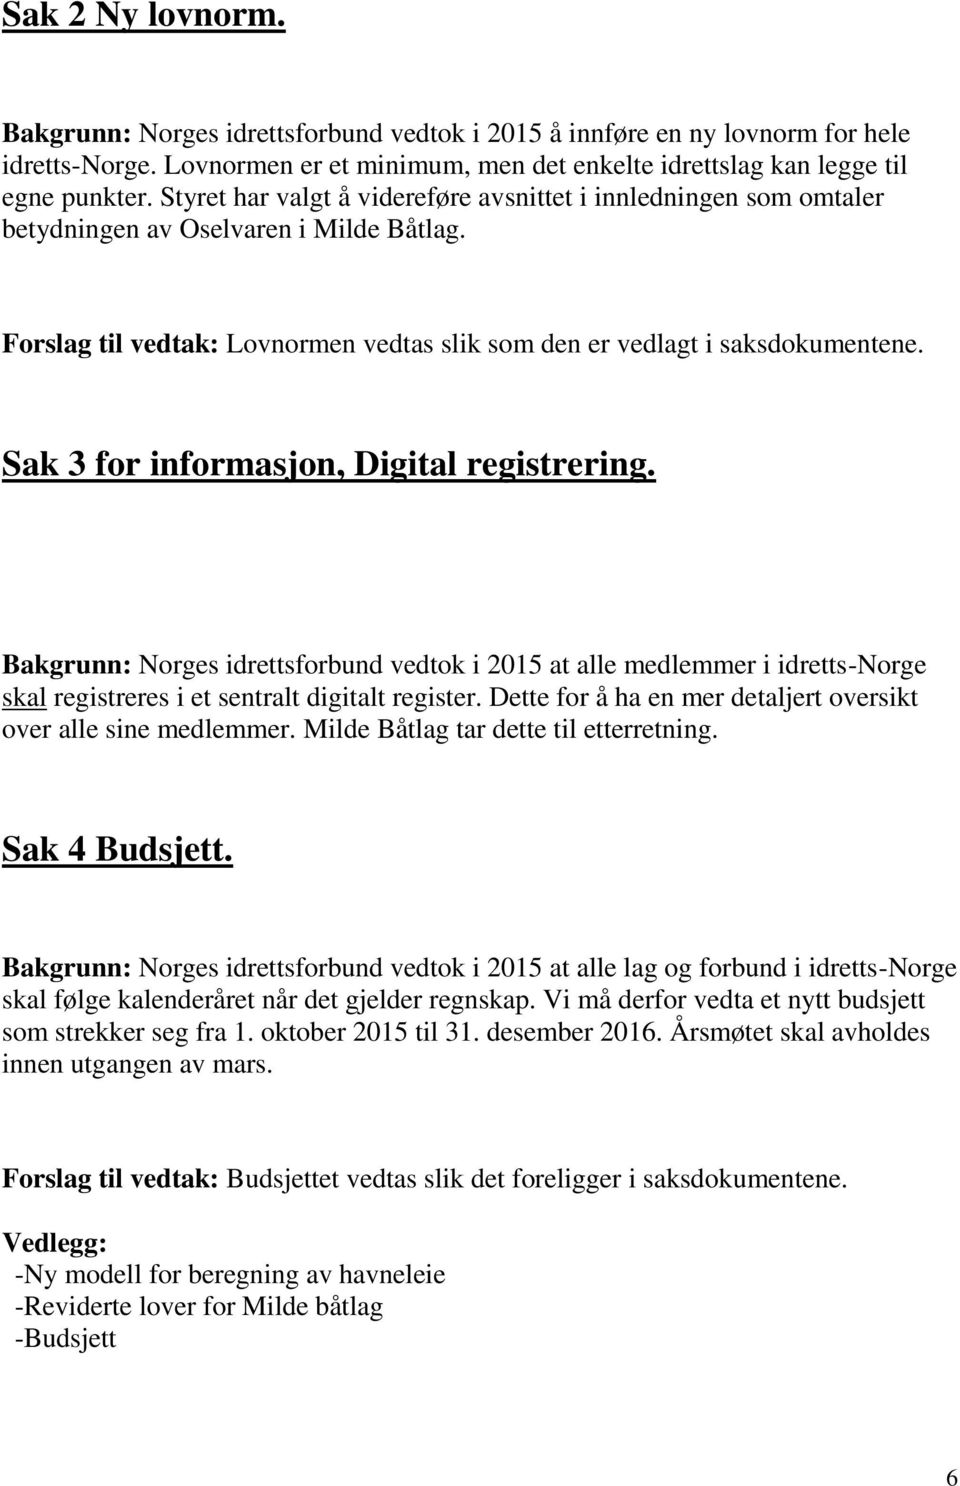 Sak 3 for informasjon, Digital registrering. Bakgrunn: Norges idrettsforbund vedtok i 2015 at alle medlemmer i idretts-norge skal registreres i et sentralt digitalt register.